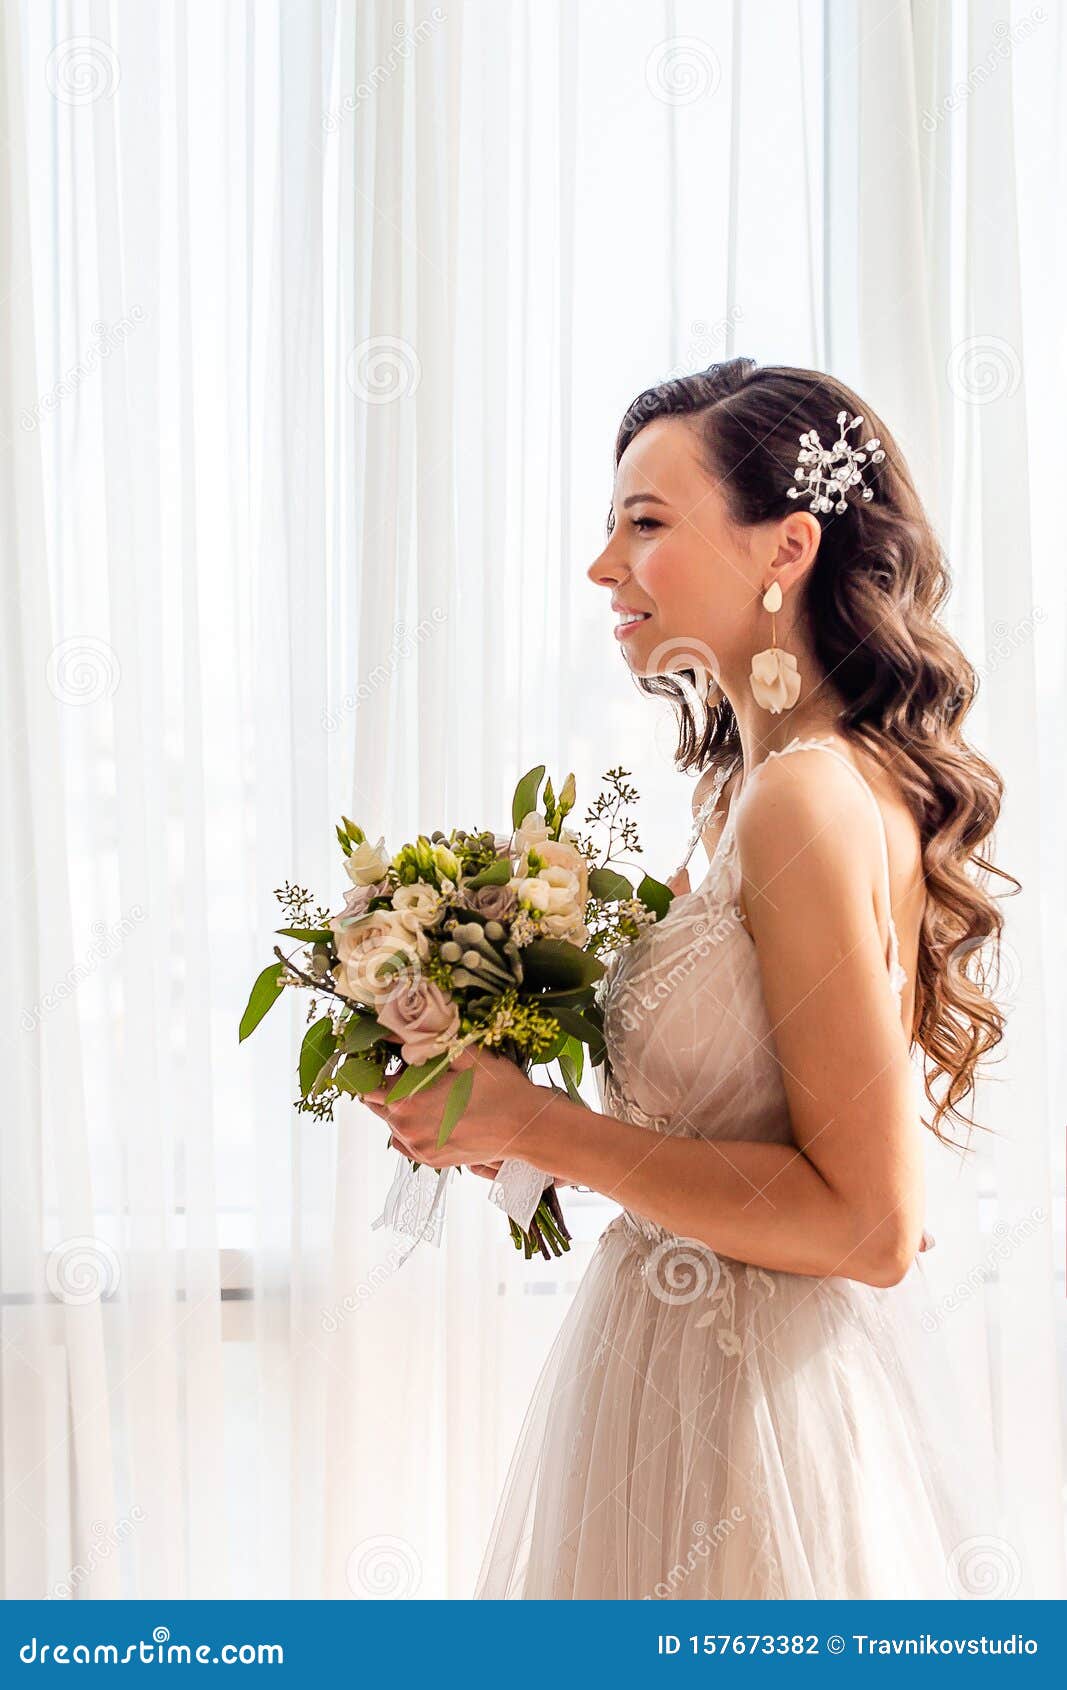 婚礼日美女配花新娘画像库存照片 图片包括有花束 构成 眼睛 染睫毛油 女性 花卉 表面